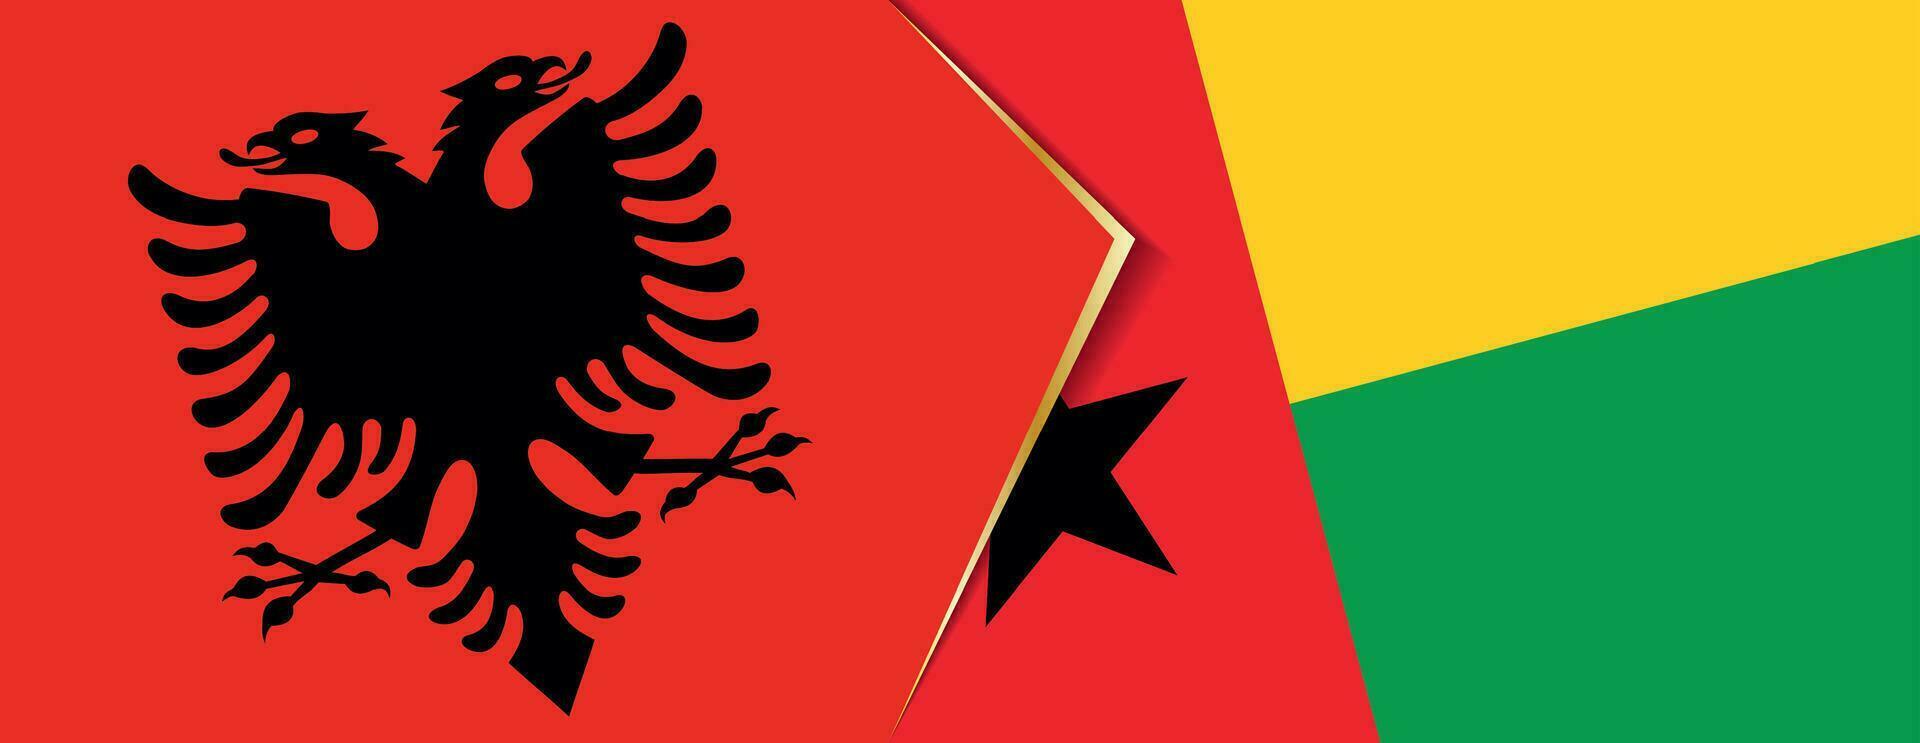 Albania y guinea-bissau banderas, dos vector banderas